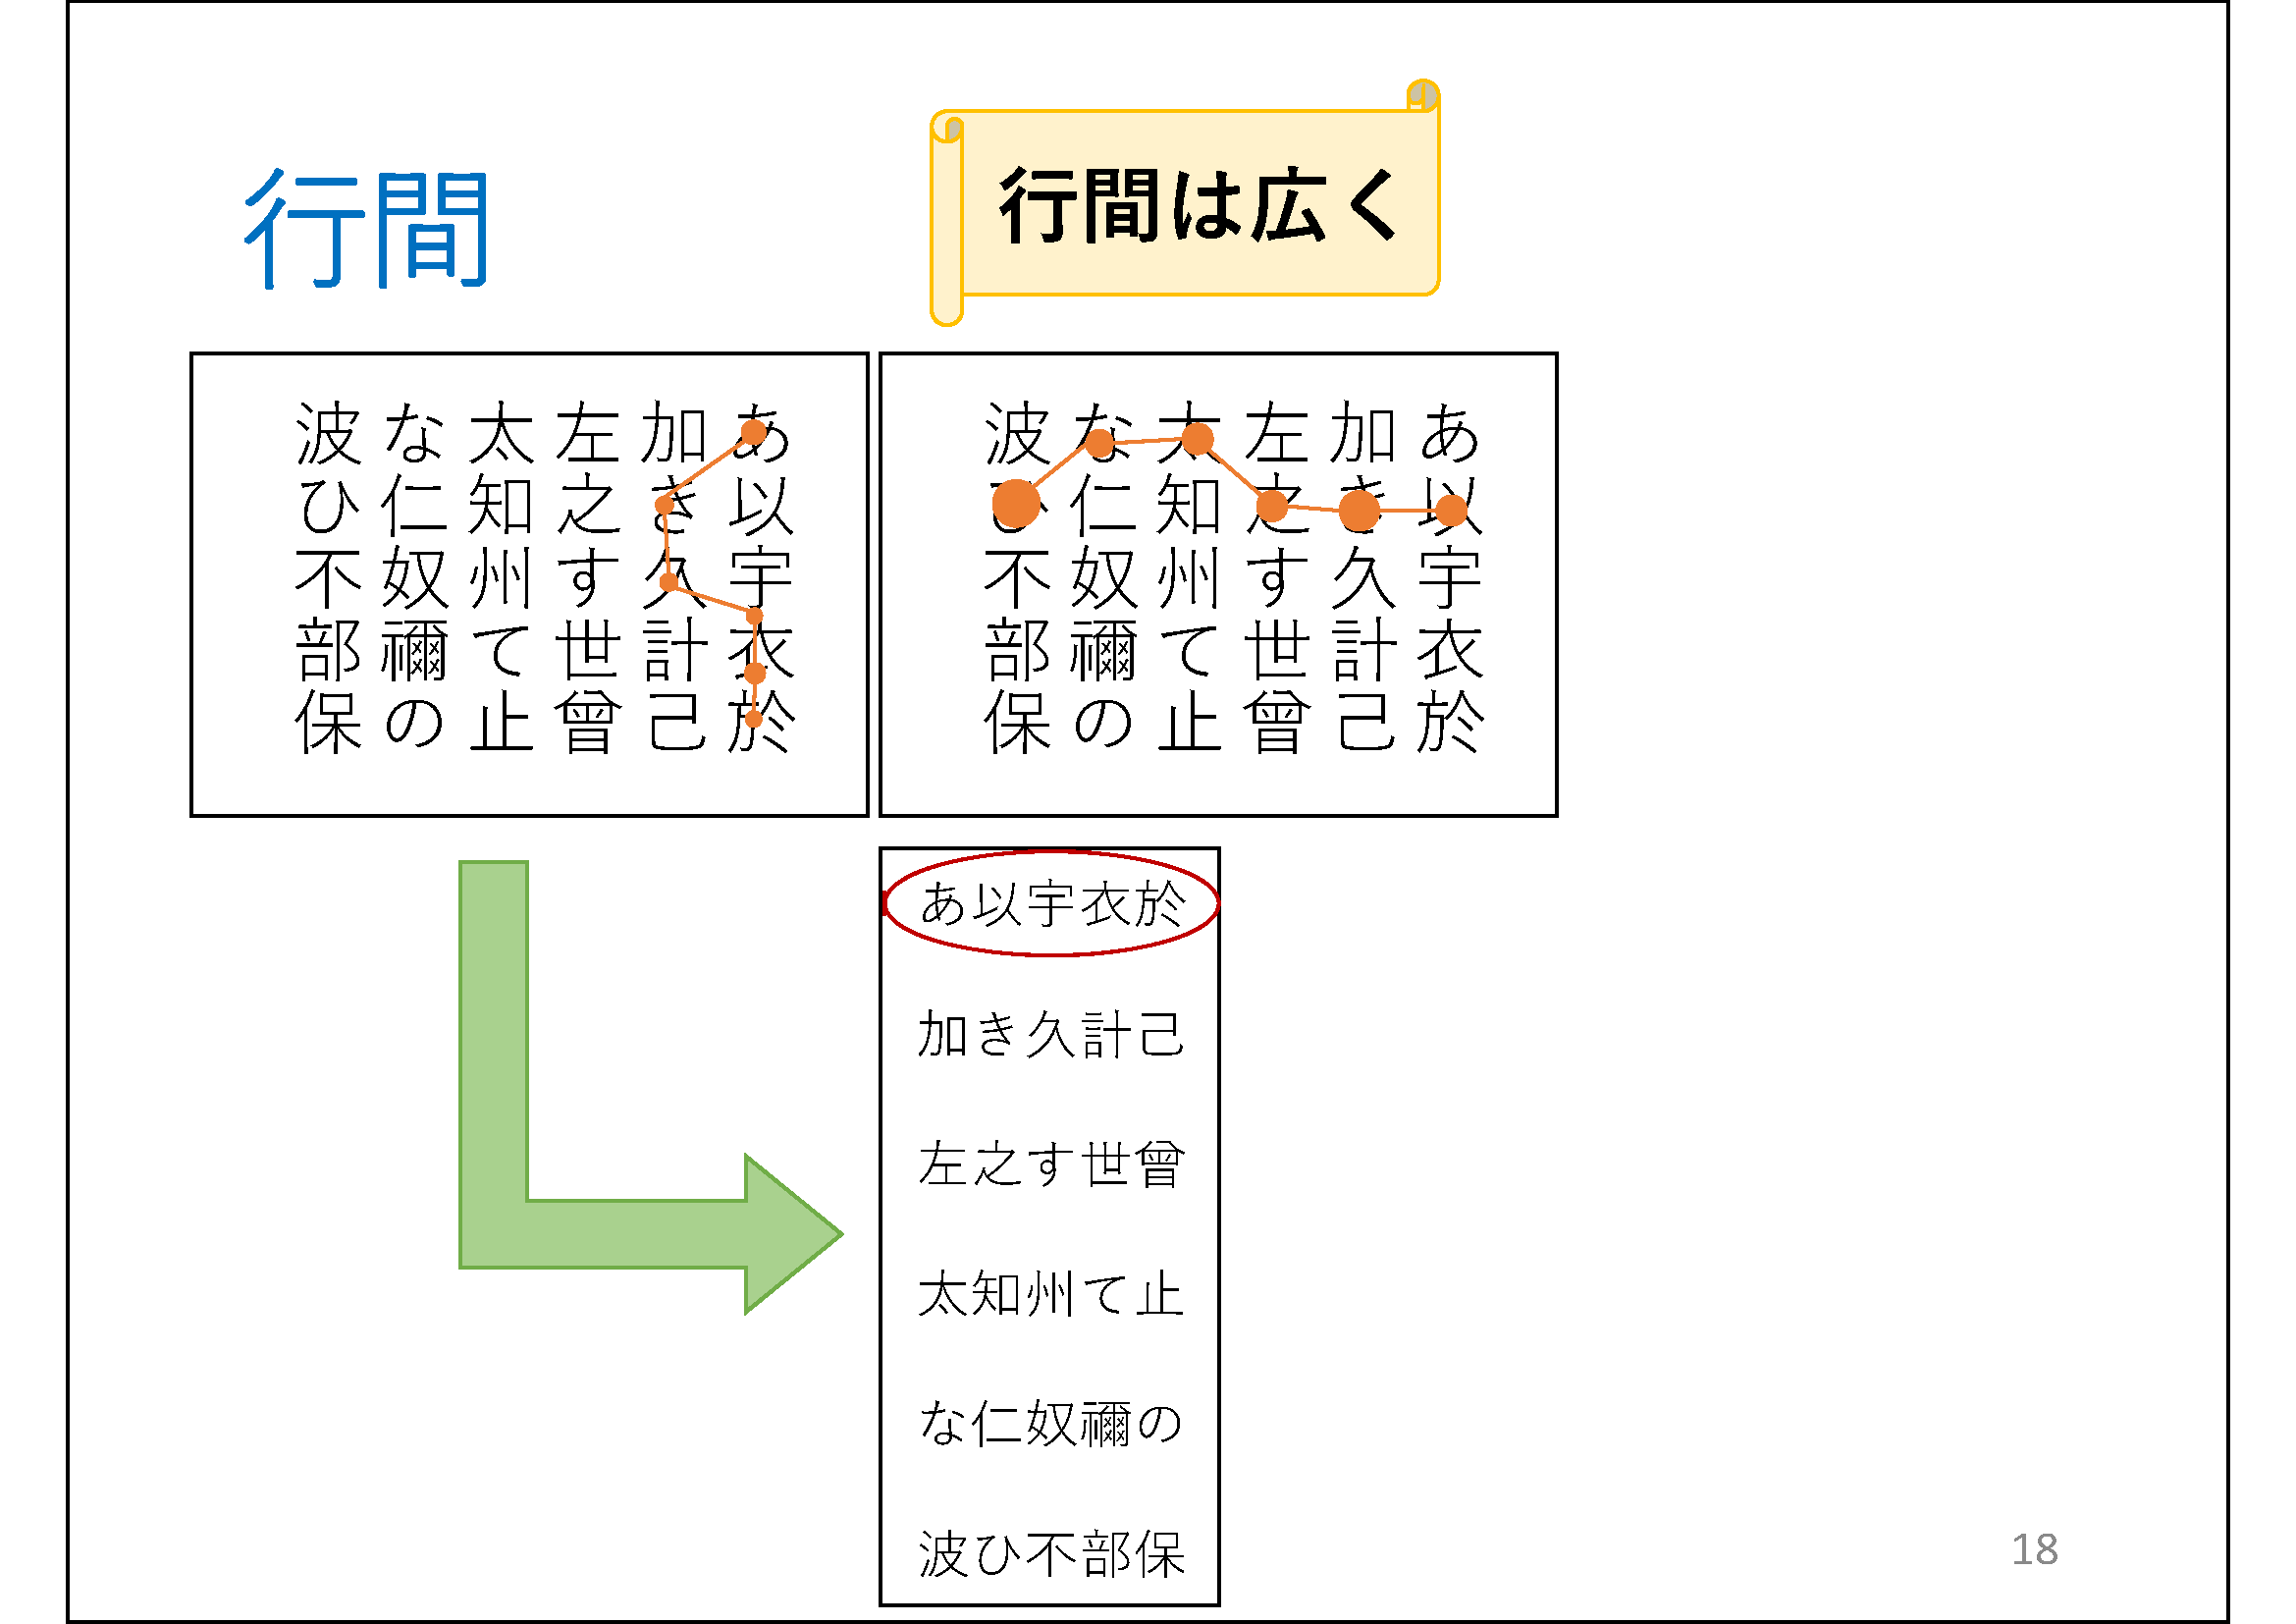 行間

	（＊校正者注：縦書きのあ行からは行が漢字で表記したものが左右に2つ並んでいます。
	右側には、複数の丸を線で結んだ折れ線グラフのようなもの、他の行の文字に遷移しながら、上から下に、1文字の上にある丸が線でつながるアニメーションがあります。
	左側には、複数の丸を線で結んだ折れ線グラフのようなもの、他の行の文字に遷移しながら、左から右に、1文字の上にある丸が線でつながるアニメーションがあります。
	下矢印で2.0行、あいうえおが赤い枠で囲っています。
	横巻の図形の中に「行間は広く」書いてあります。)